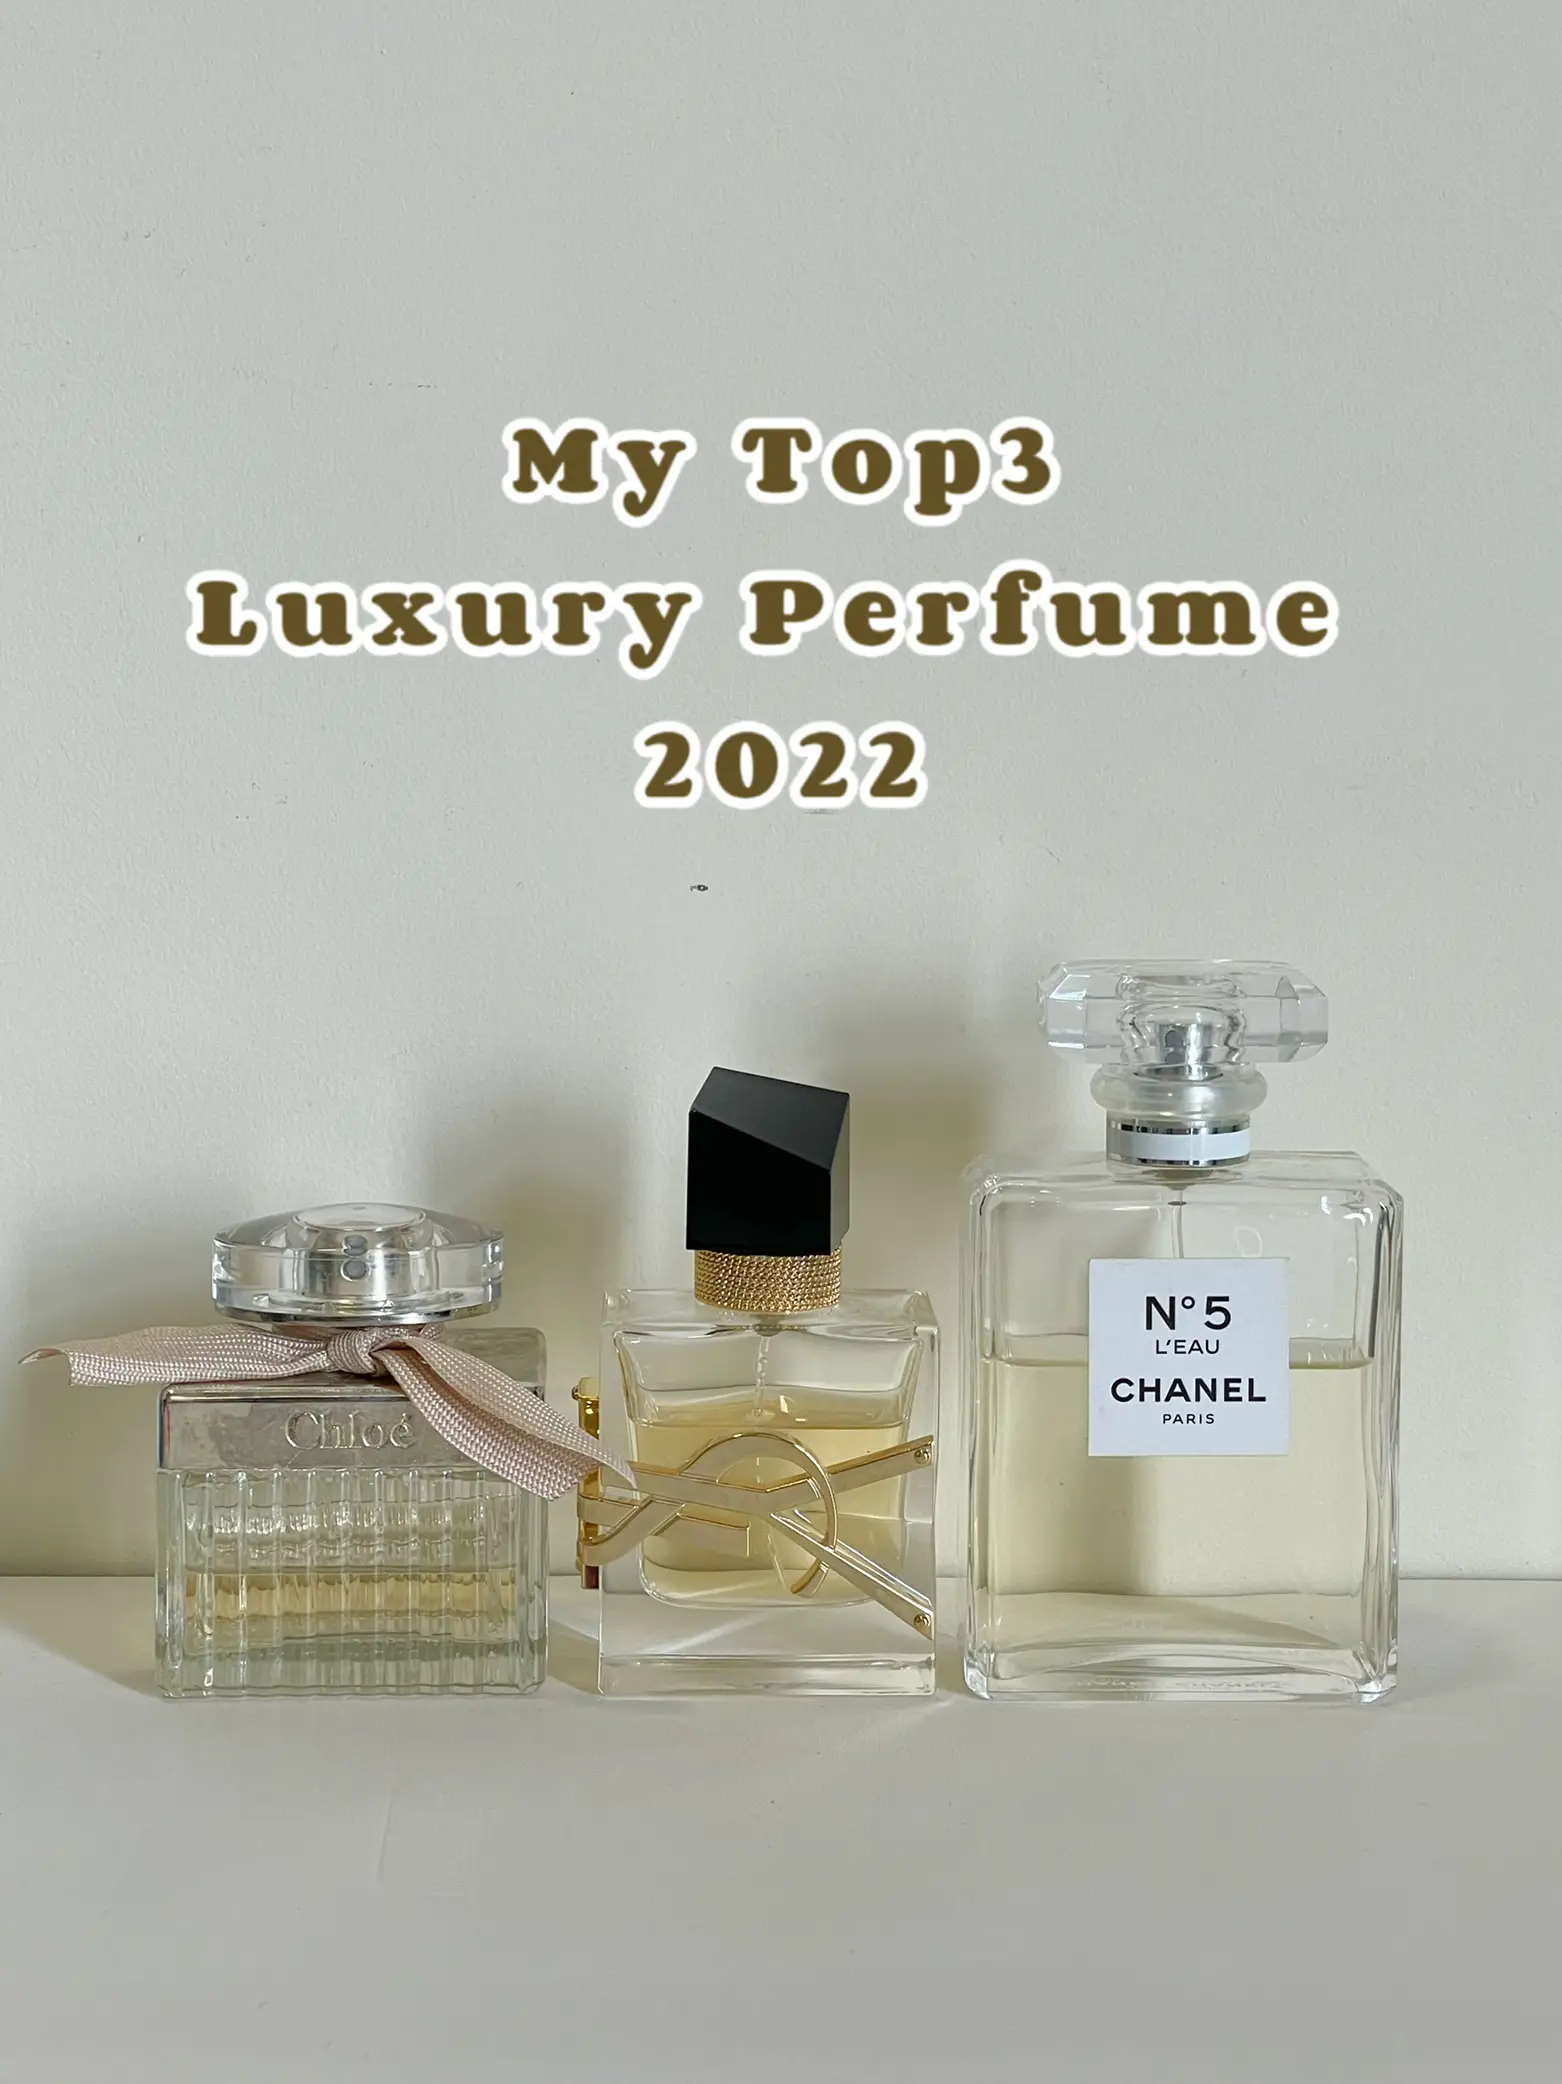 😍My Top 3 Luxury Perfumes 2022, Gallery posted by Lemonade